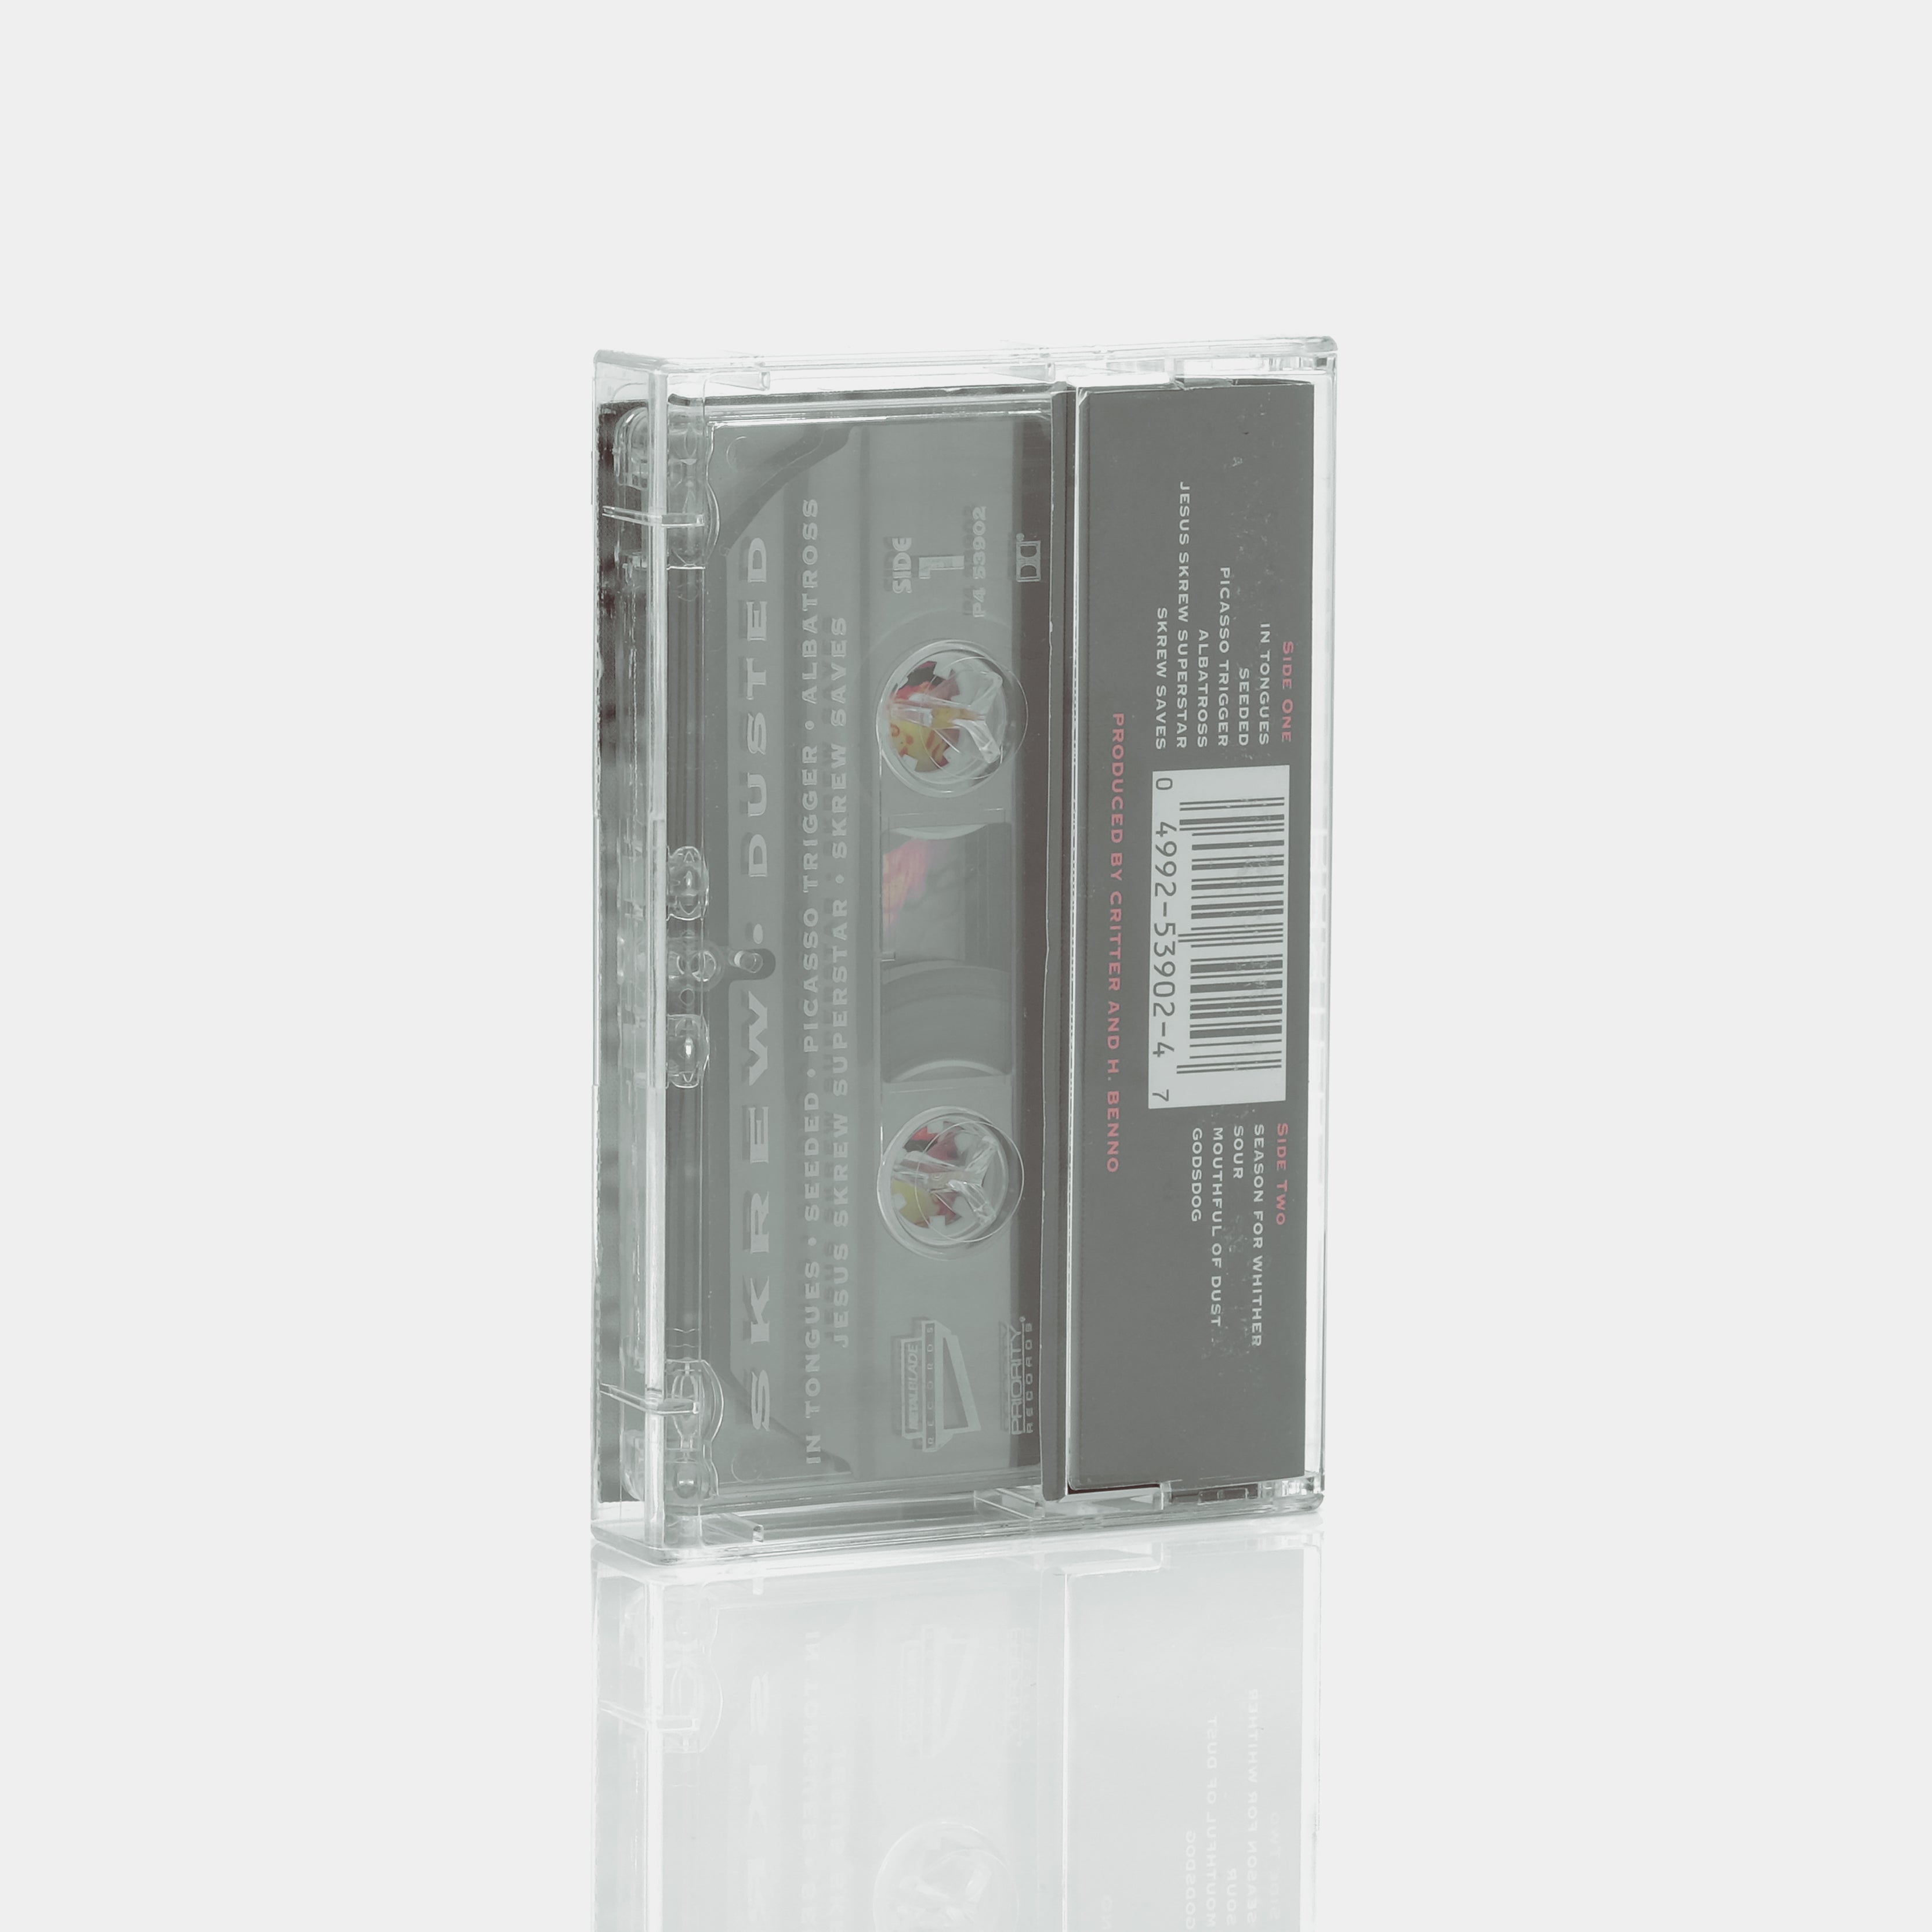 Skrew - Dusted Cassette Tape